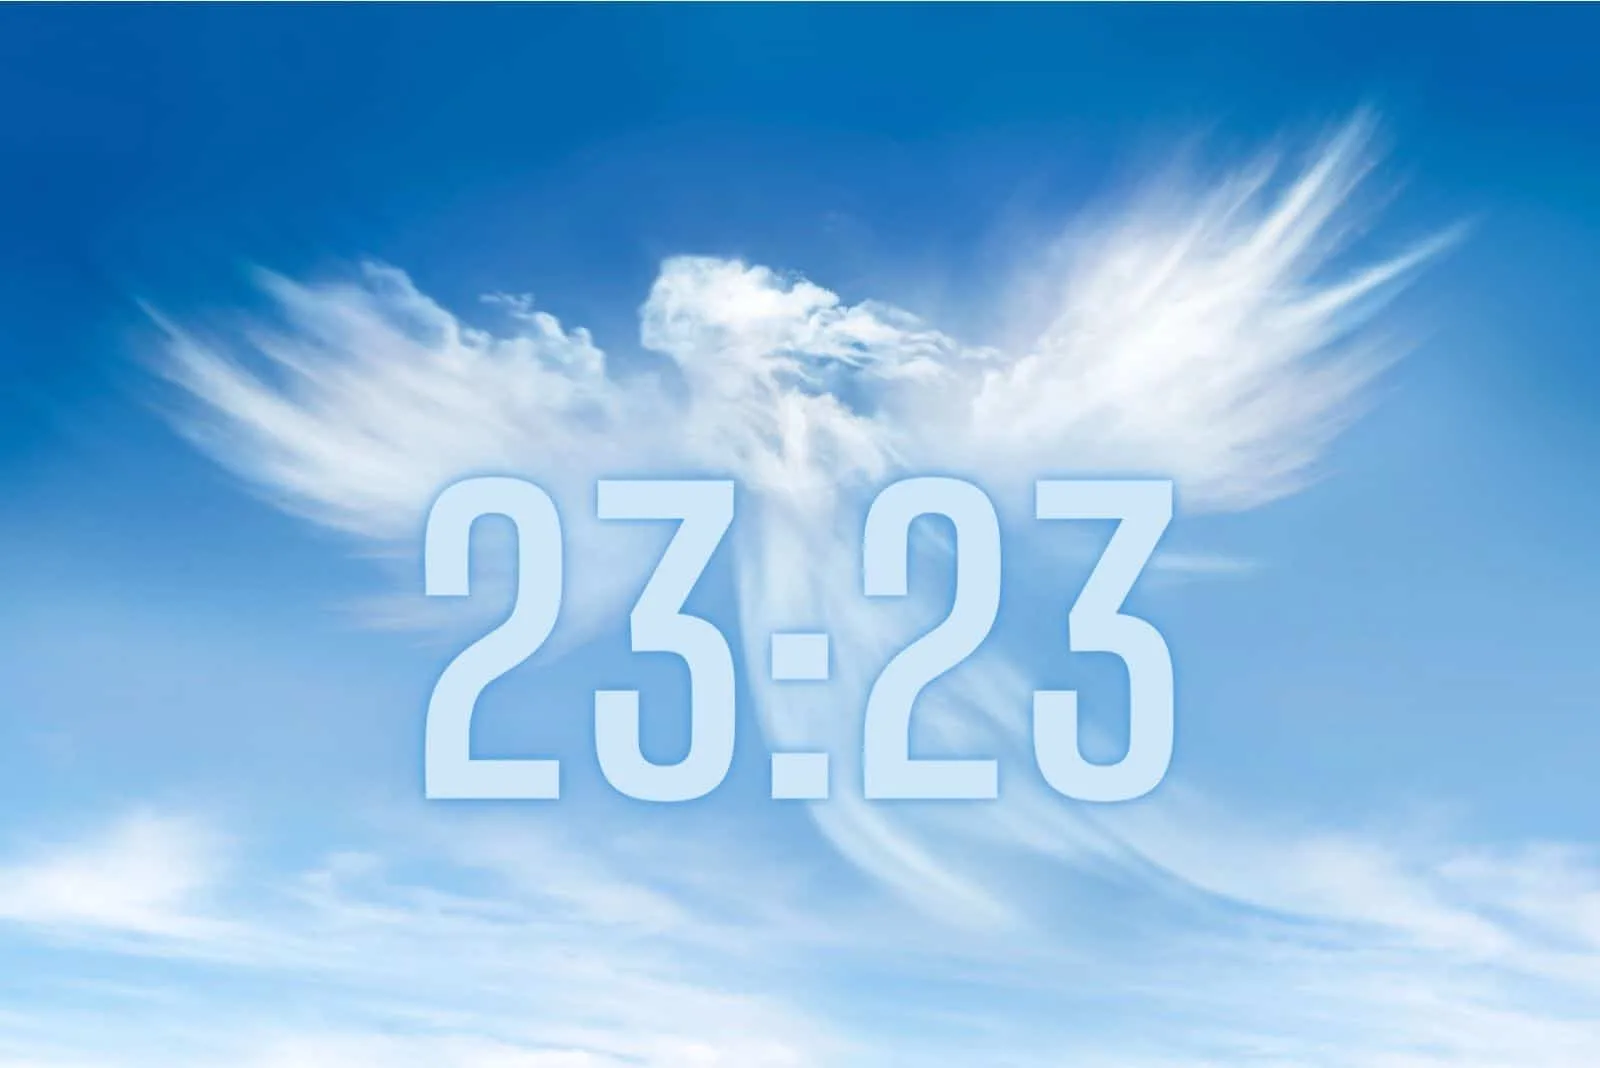 Zeit 23:23 in den Himmel geschrieben mit Engel aus Wolken